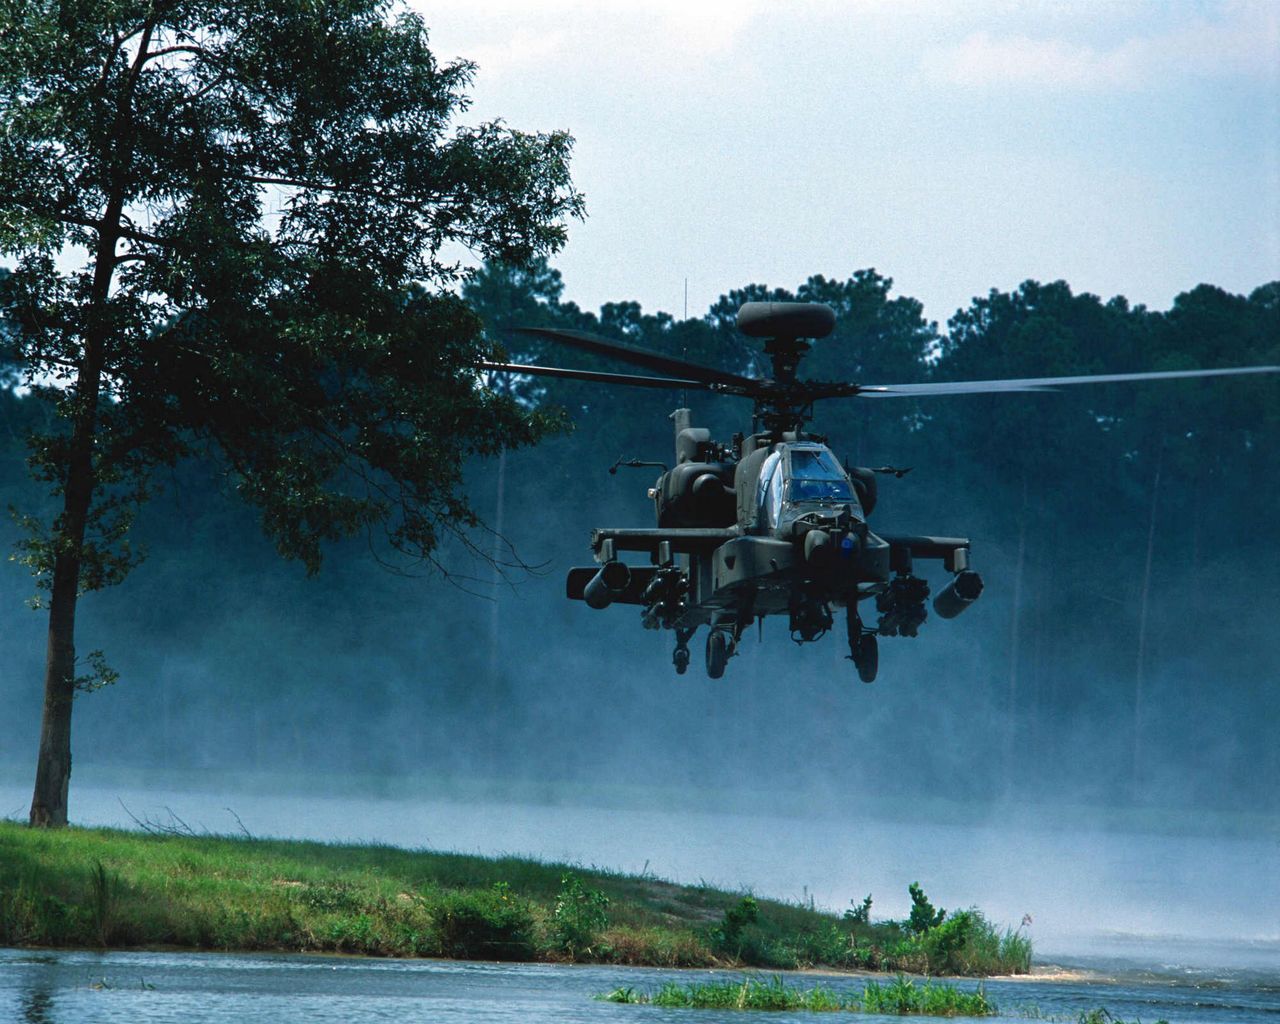 Wzmocnienie wschodniej flanki NATO. Sojusznicze siły w Polsce - Śmigłowiec AH-64 Apache